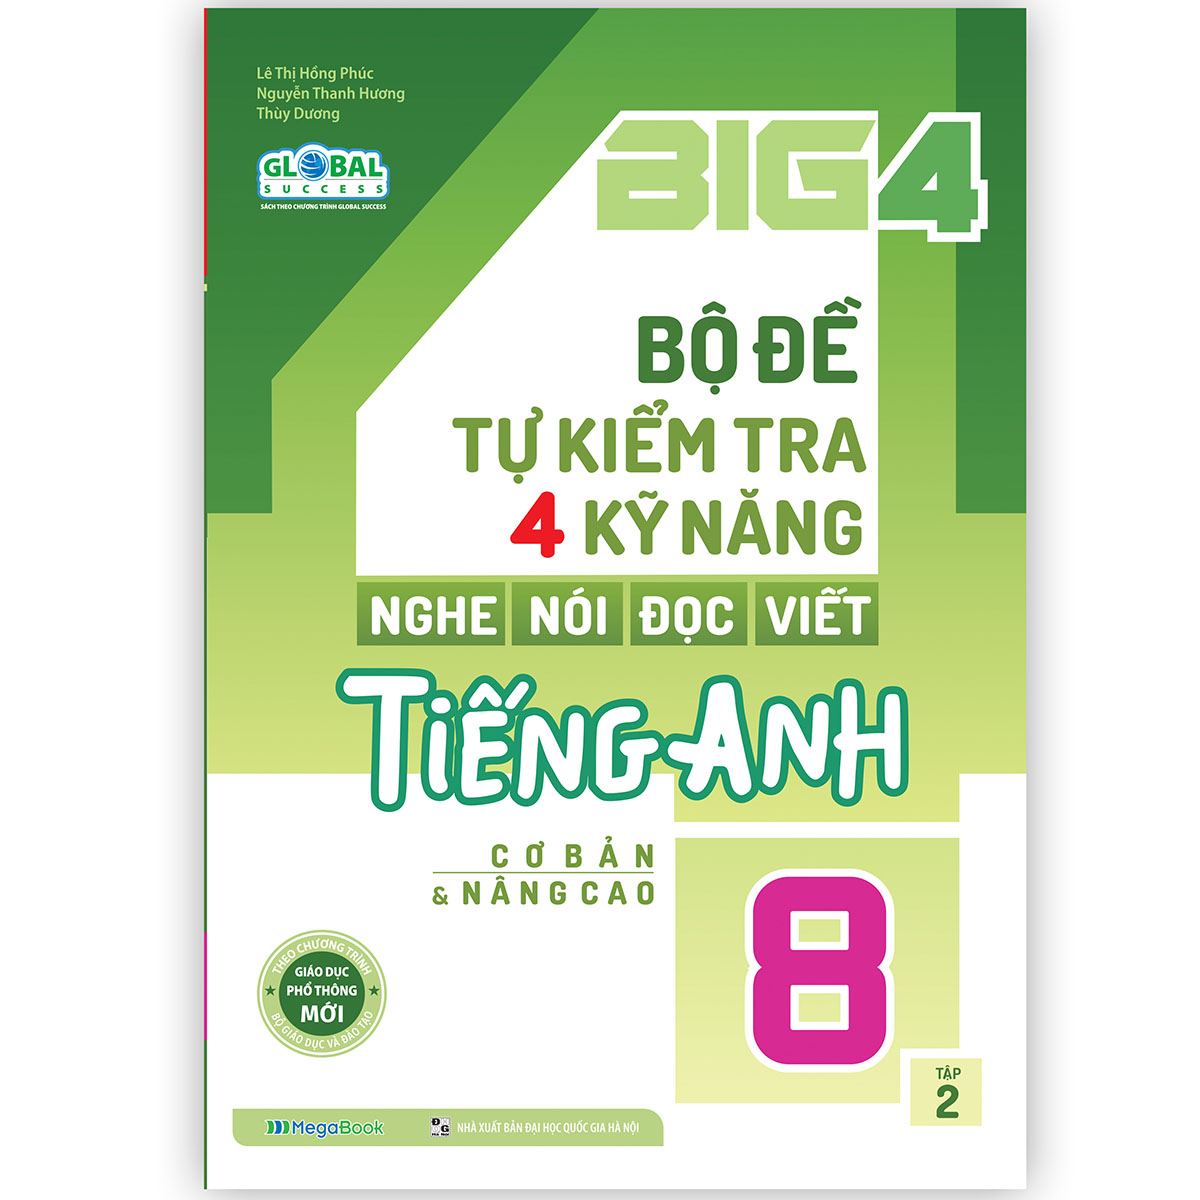 Hình ảnh Big 4 bộ đề tự kiểm tra 4 kỹ năng Nghe - Nói - Đọc - Viết tiếng Anh (cơ bản và nâng cao) lớp 8 tập 2 (Global)